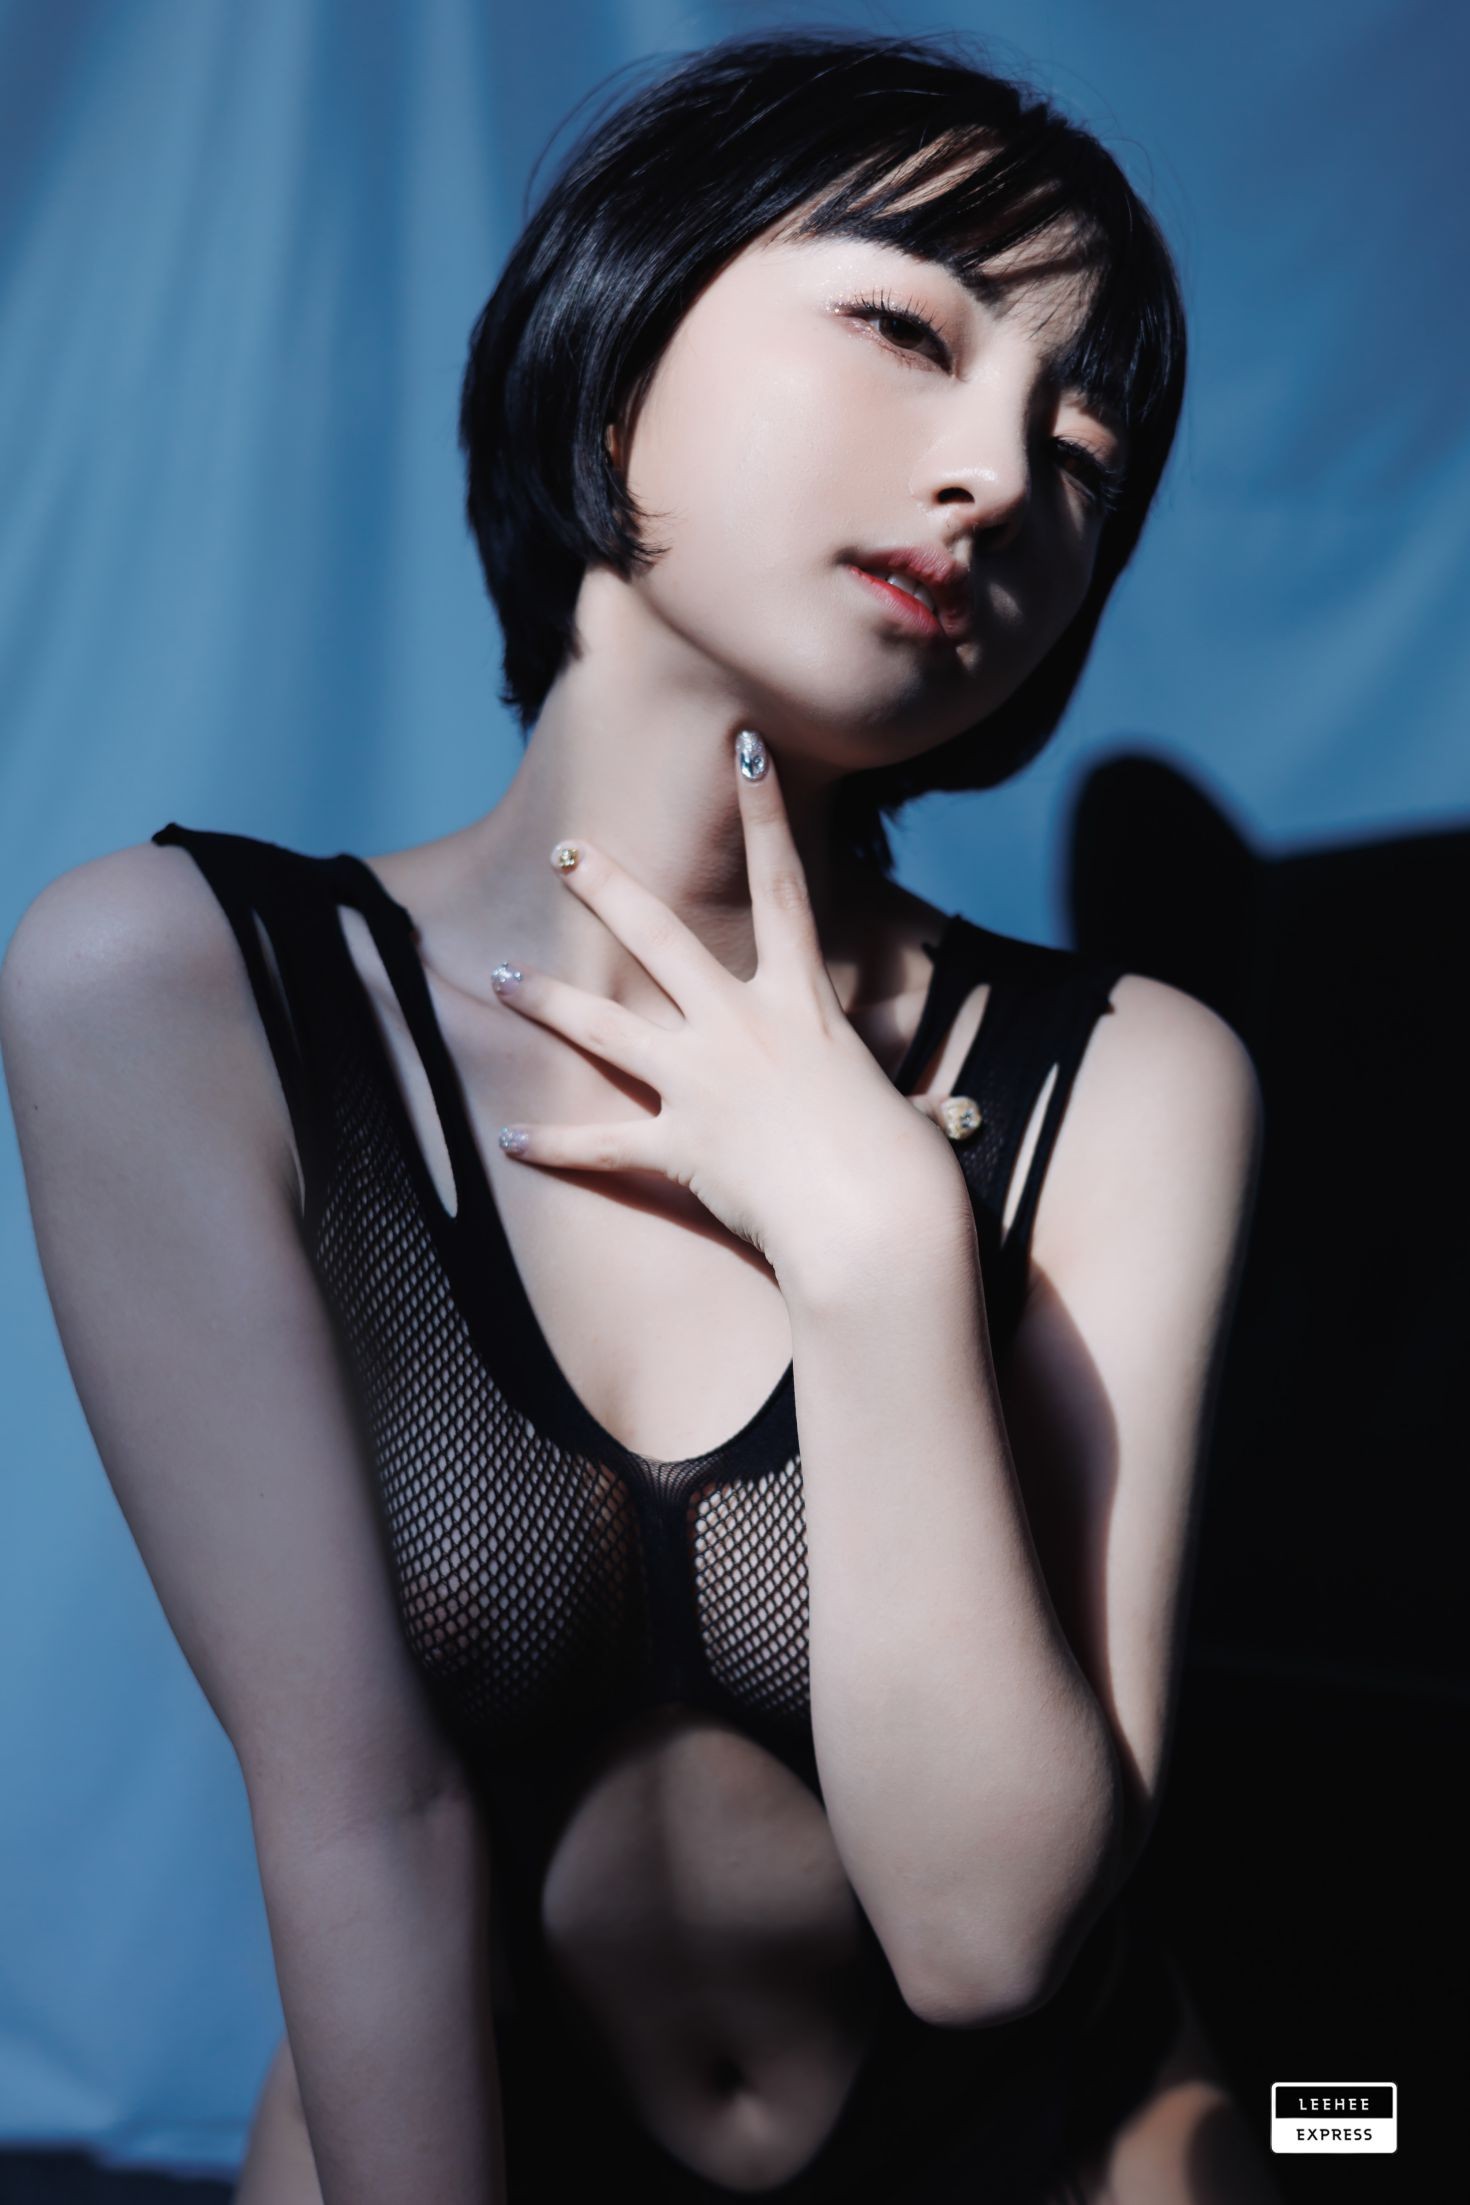 LEEHEE EXPRESS 韩国美少女模特性感写真 LERB 097 Nari (11)